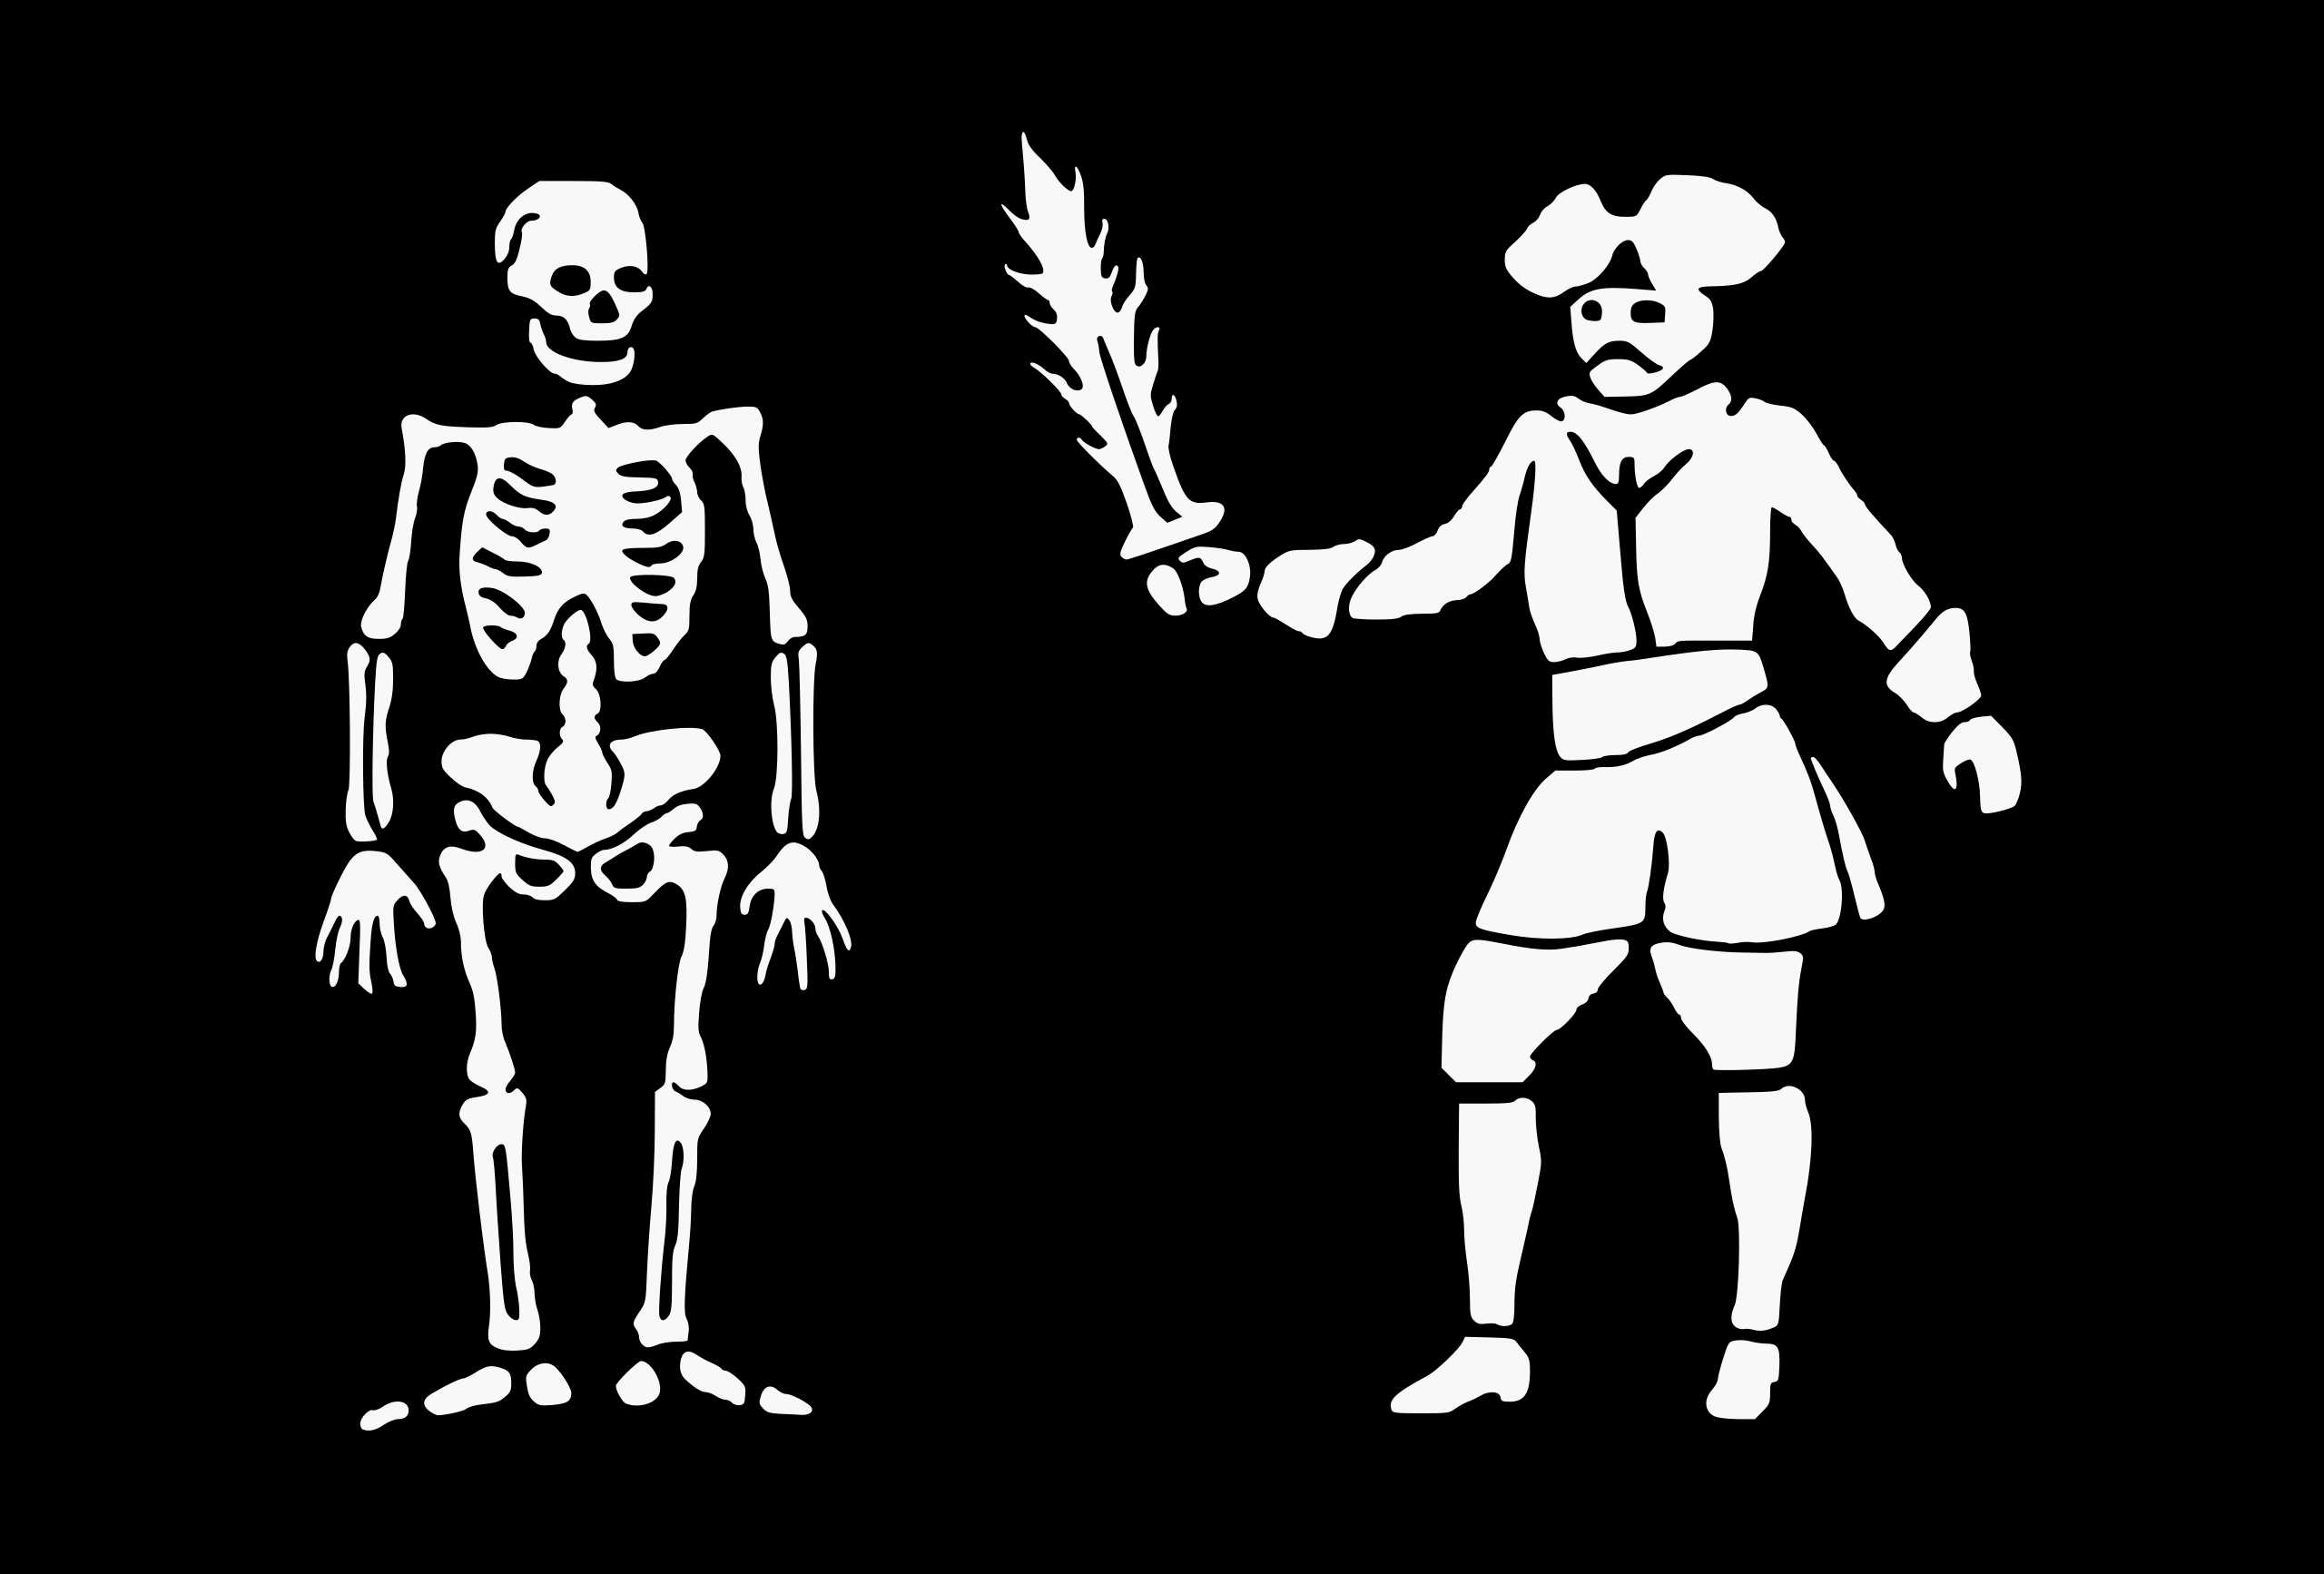 Pirates Flag Skull And Bones 2560x1734